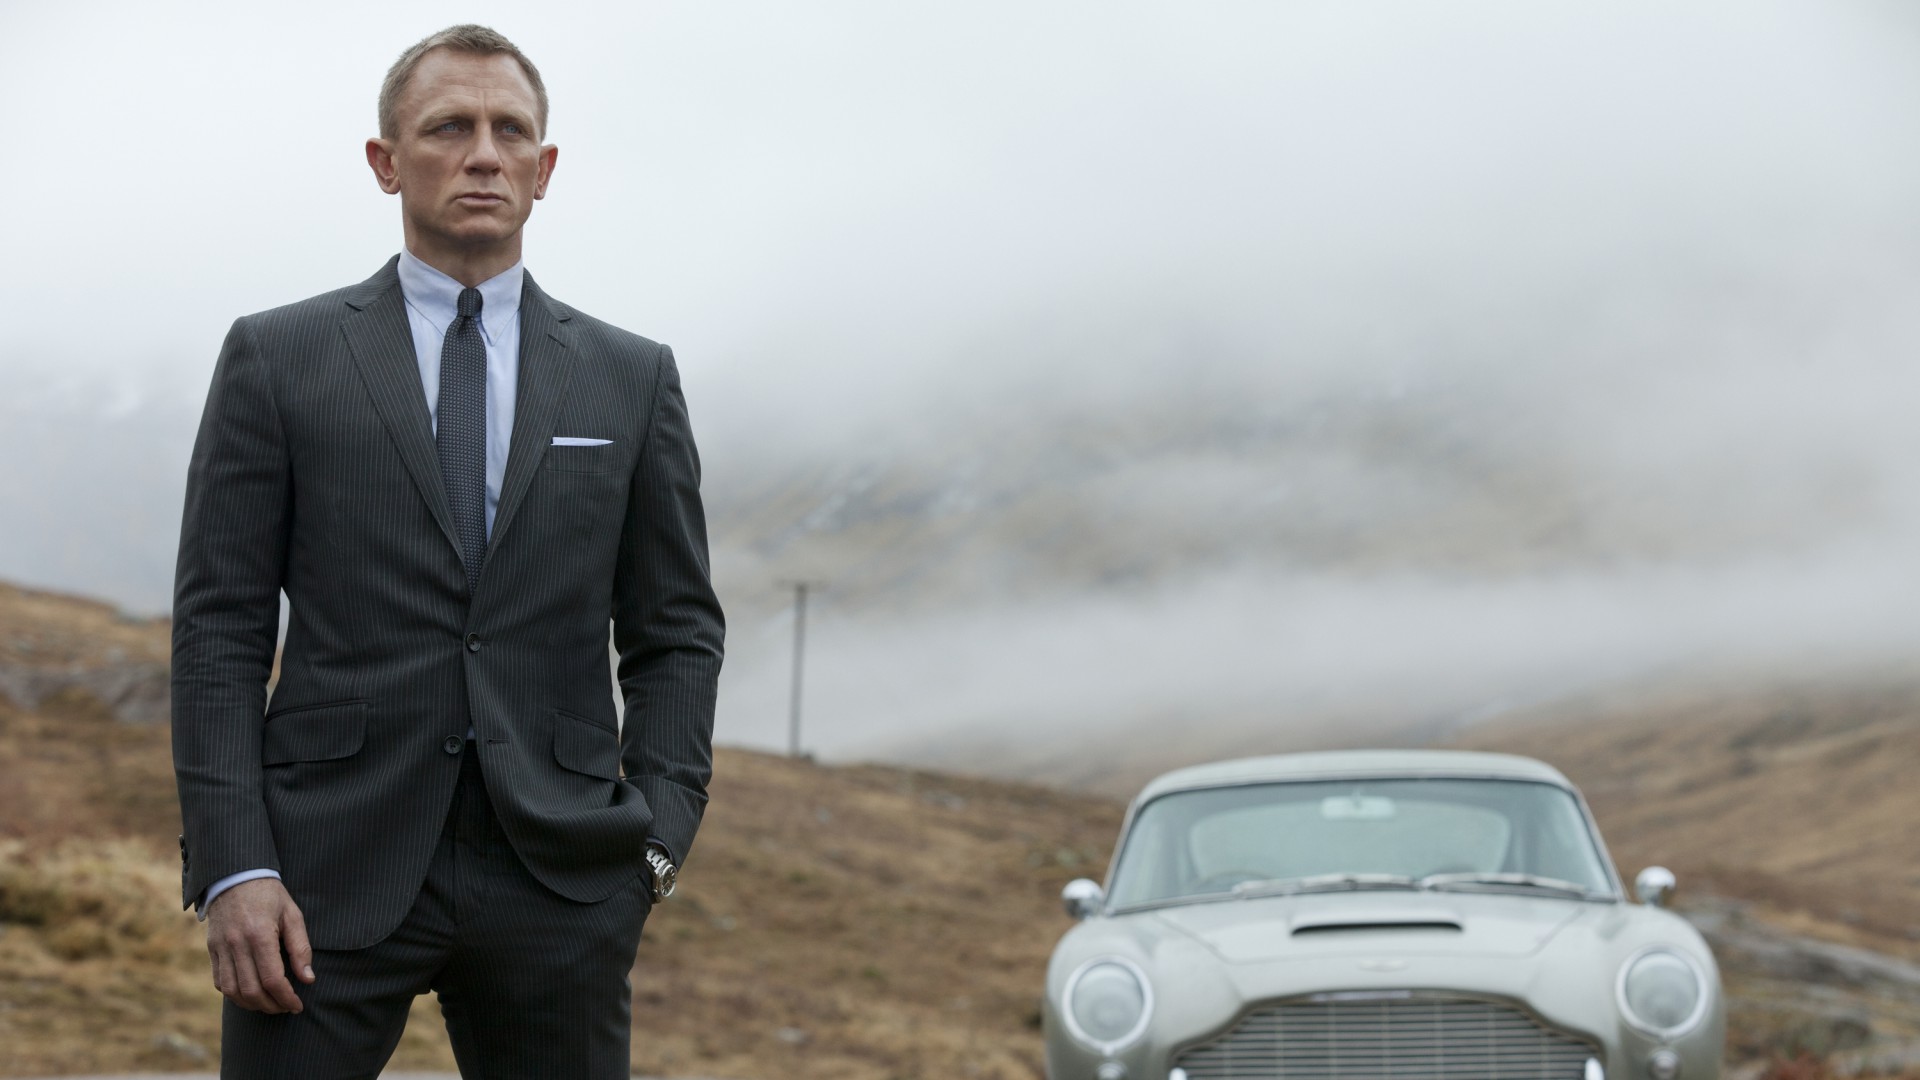 Дениел Крейг, Самые популярные знаменитости 2015, актер, Daniel Craig, 007, James Bond, Most Popular Celebs in 2015, actor, car (horizontal)